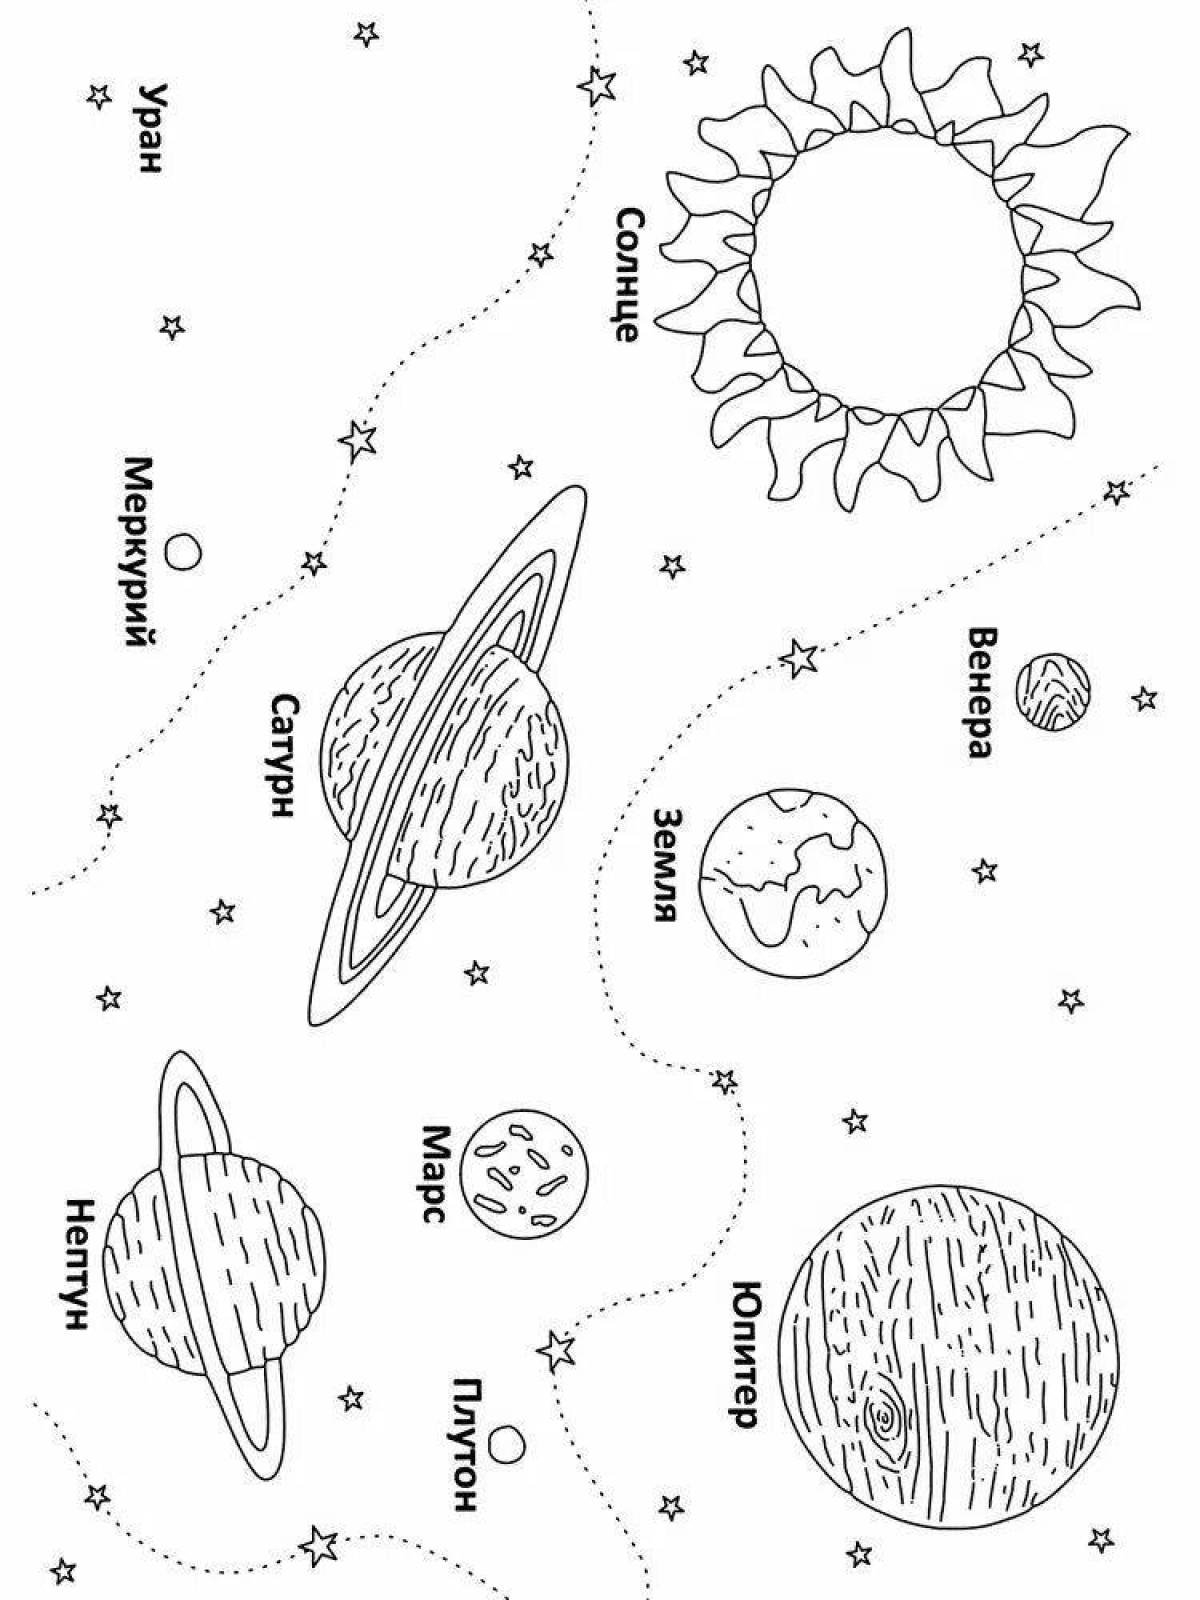 Картинки планеты солнечной системы для детей распечатать. Планеты солнечной системы раскраска. Разукрашки планеты солнечной системы. Раскраска планеты солнечной системы для детей. Солнечная система раскраска для детей.